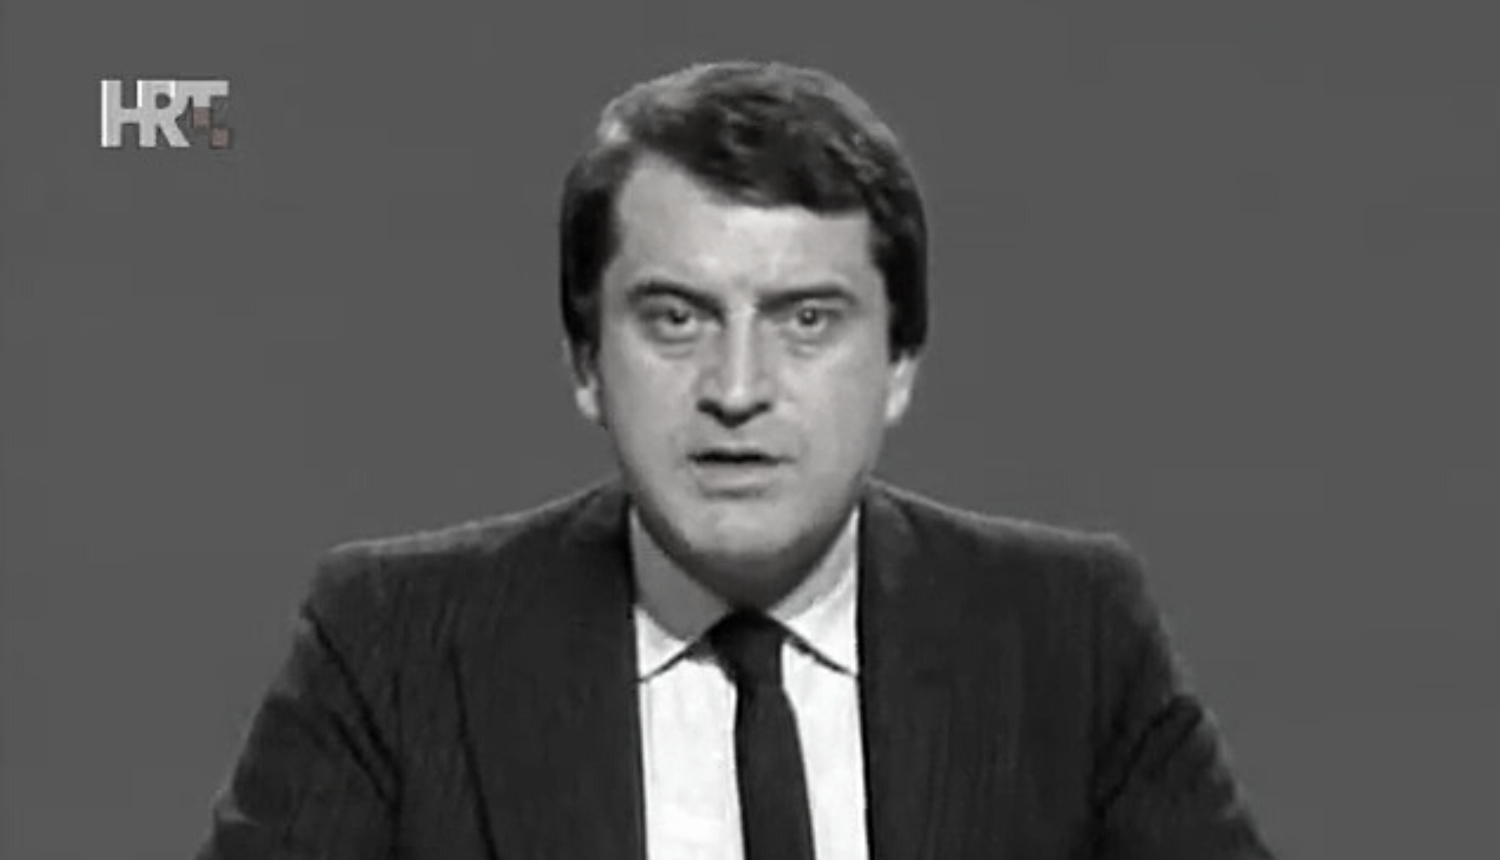 Preminuo je Vladimir Fučijaš, legendarni radijski i TV voditelj